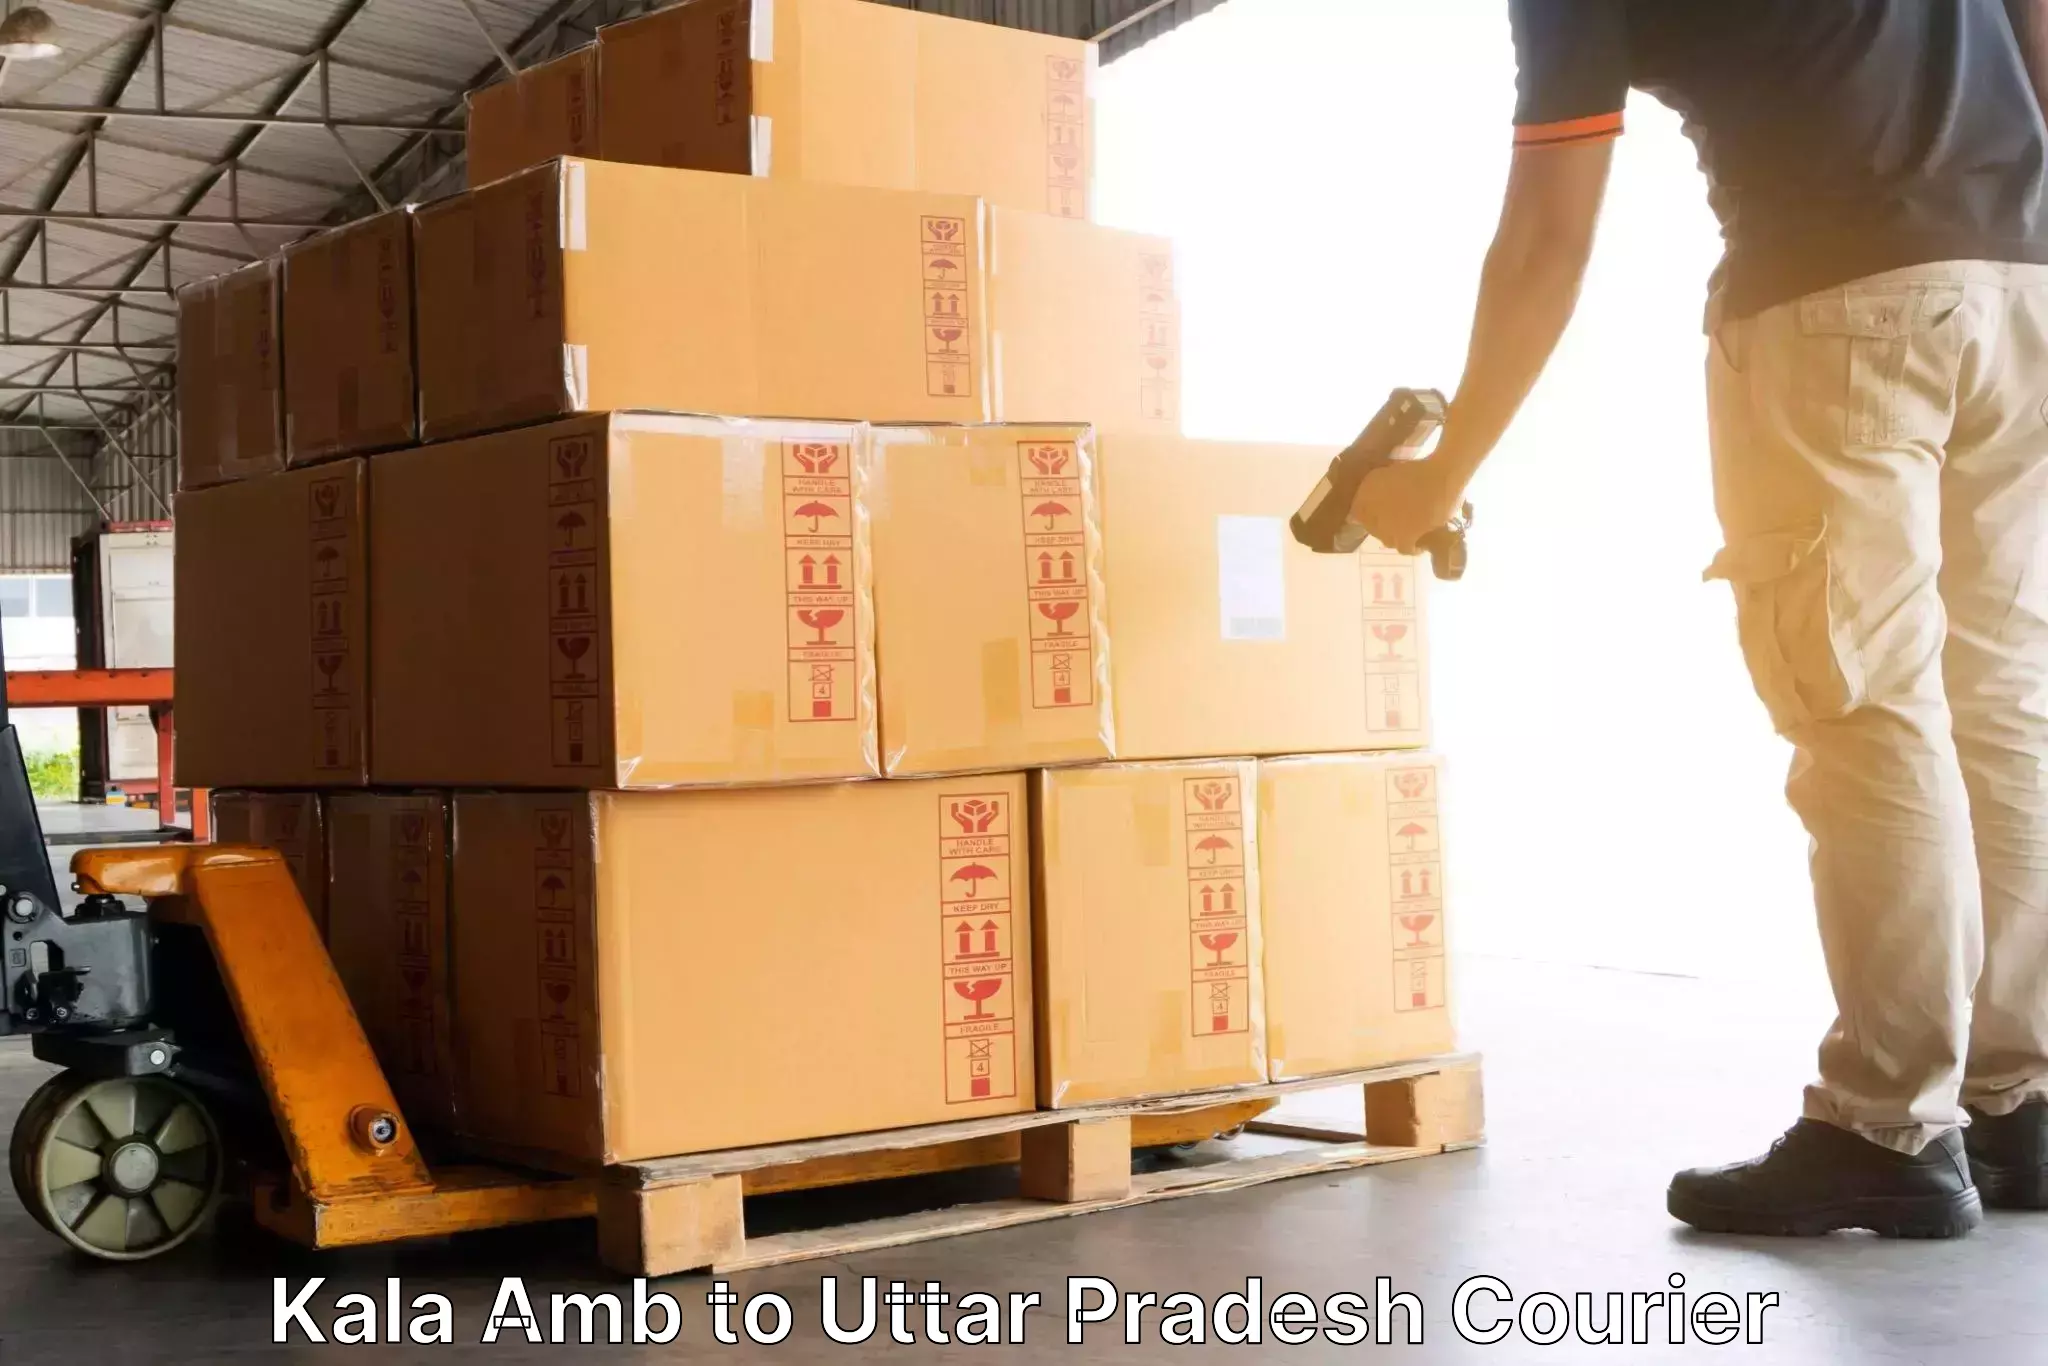 Flexible parcel services Kala Amb to Uttar Pradesh